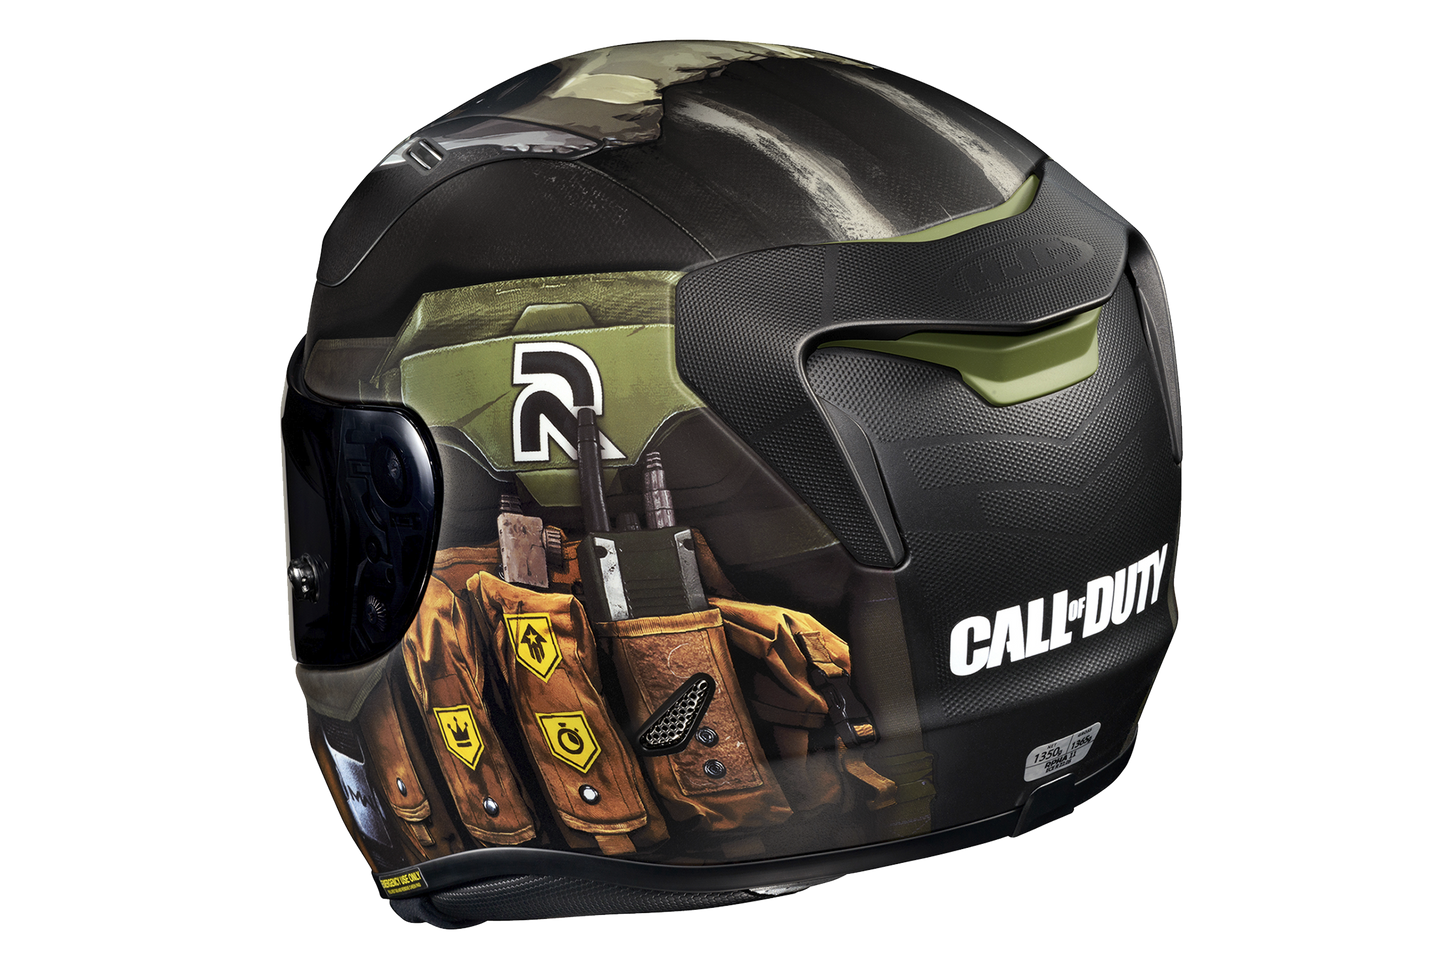 Hjc Rpha 11 Ghost Call Of Duty helmet